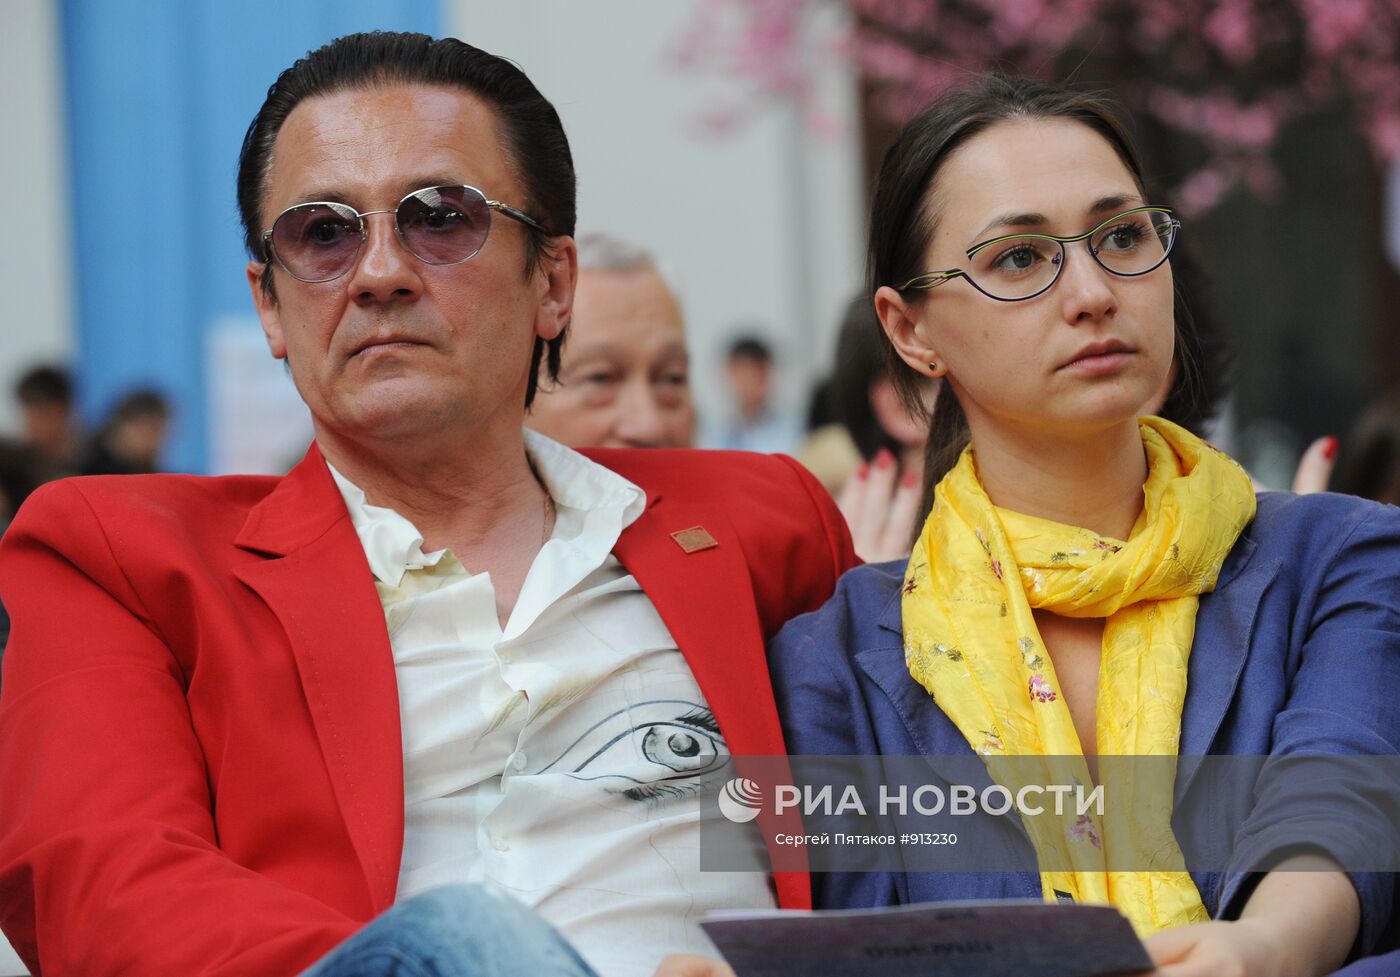 Олег Меньшиков с супругой Анастасией